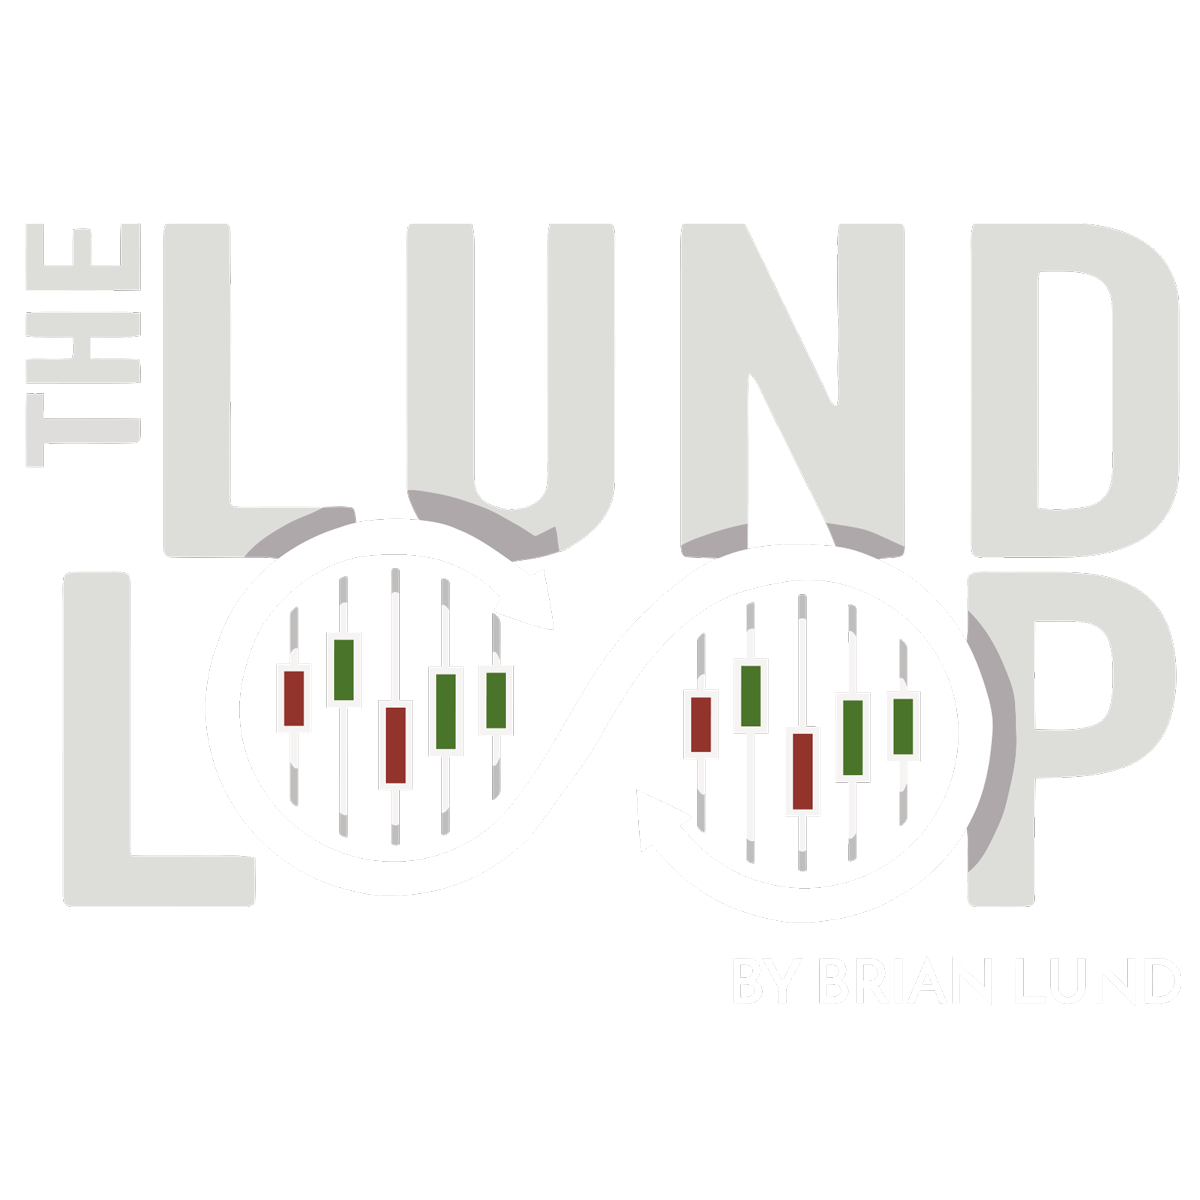 The Lund Loop